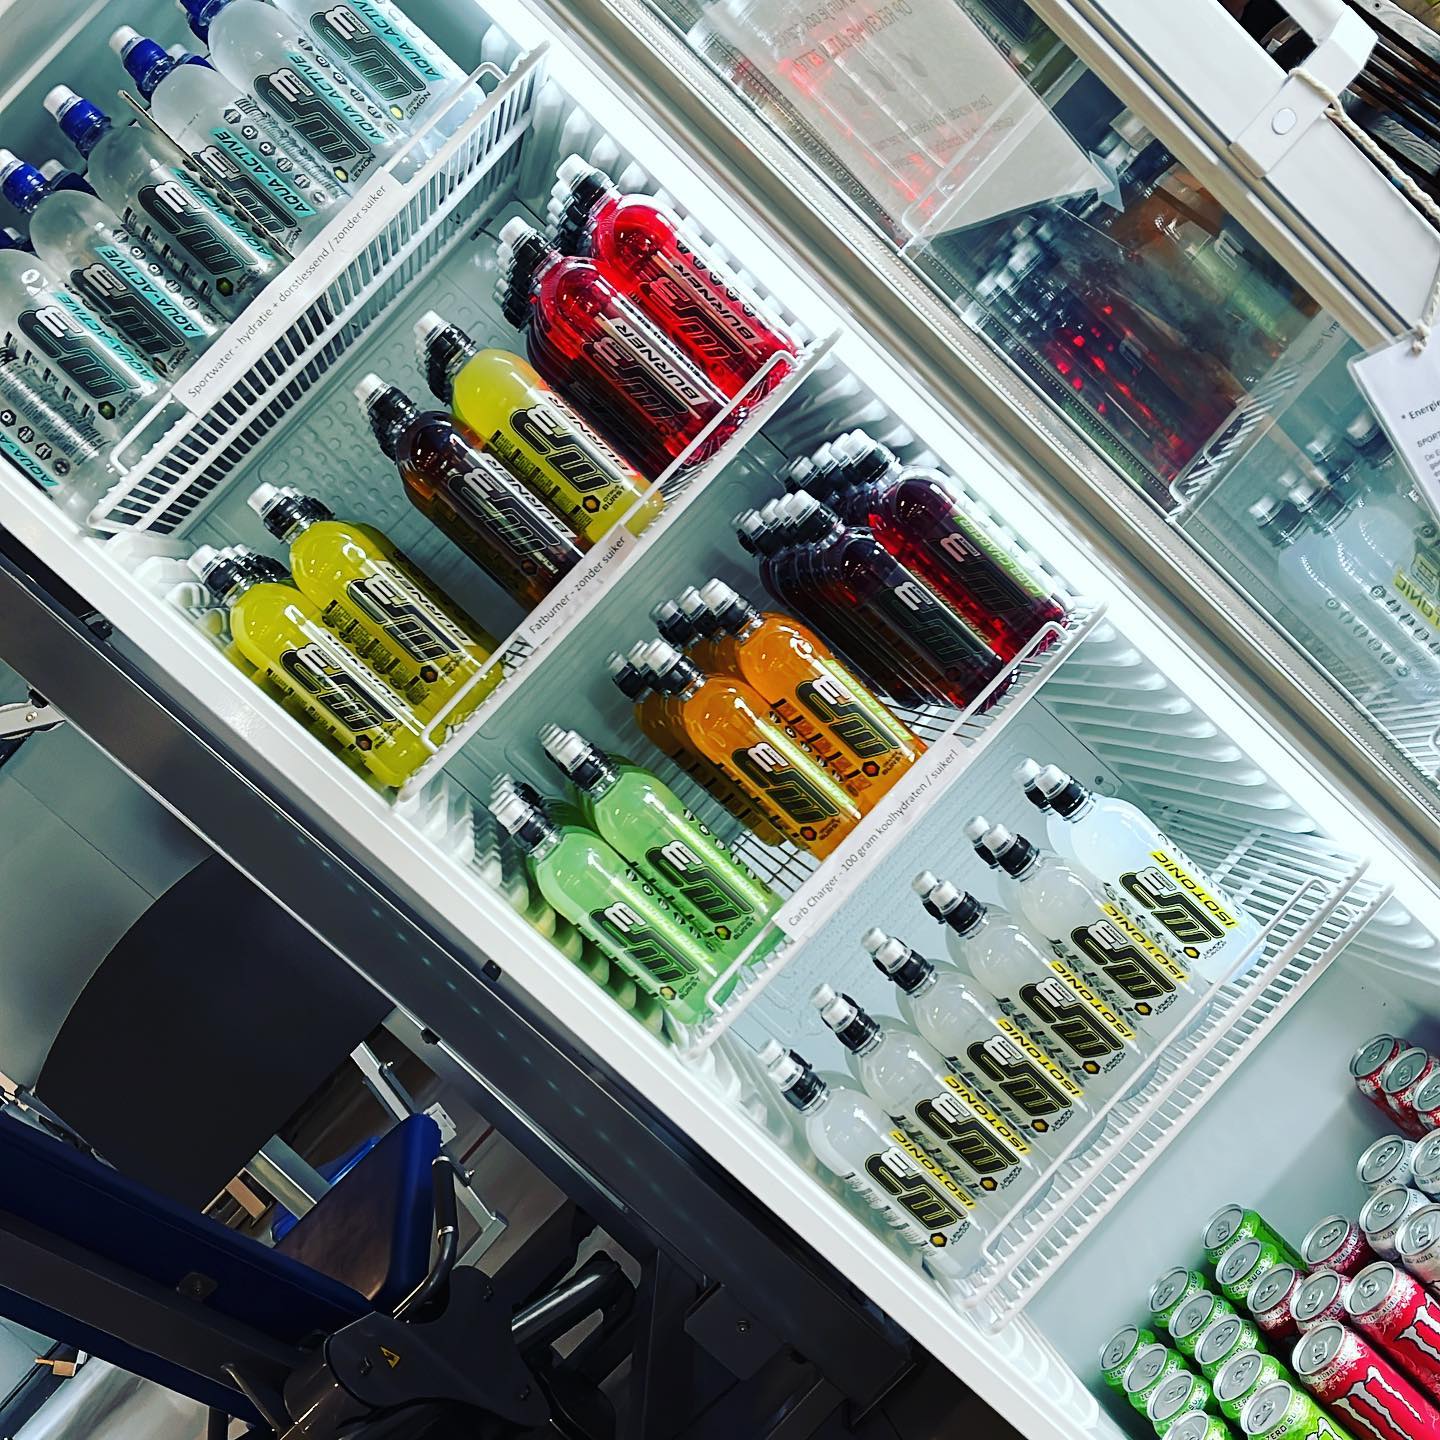 De koelkast zit weer vol met jullie favoriete #sportdrankjes #burners #carbs #isotonic #Monster bij De #Sportschool in #Emmen!